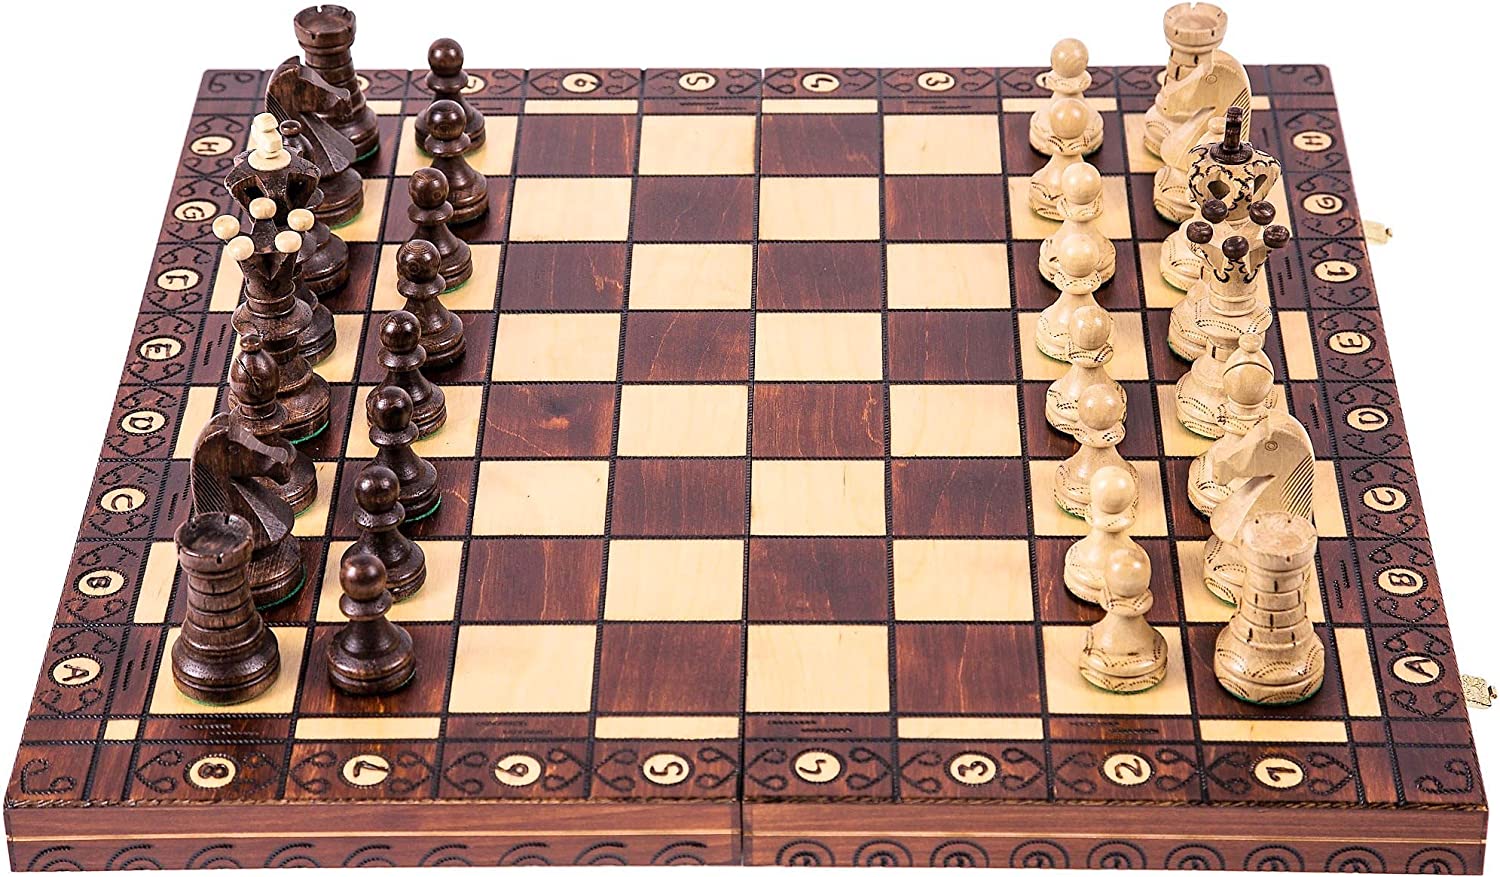 hochwertiges, edles schachspiel - empfehlung 2